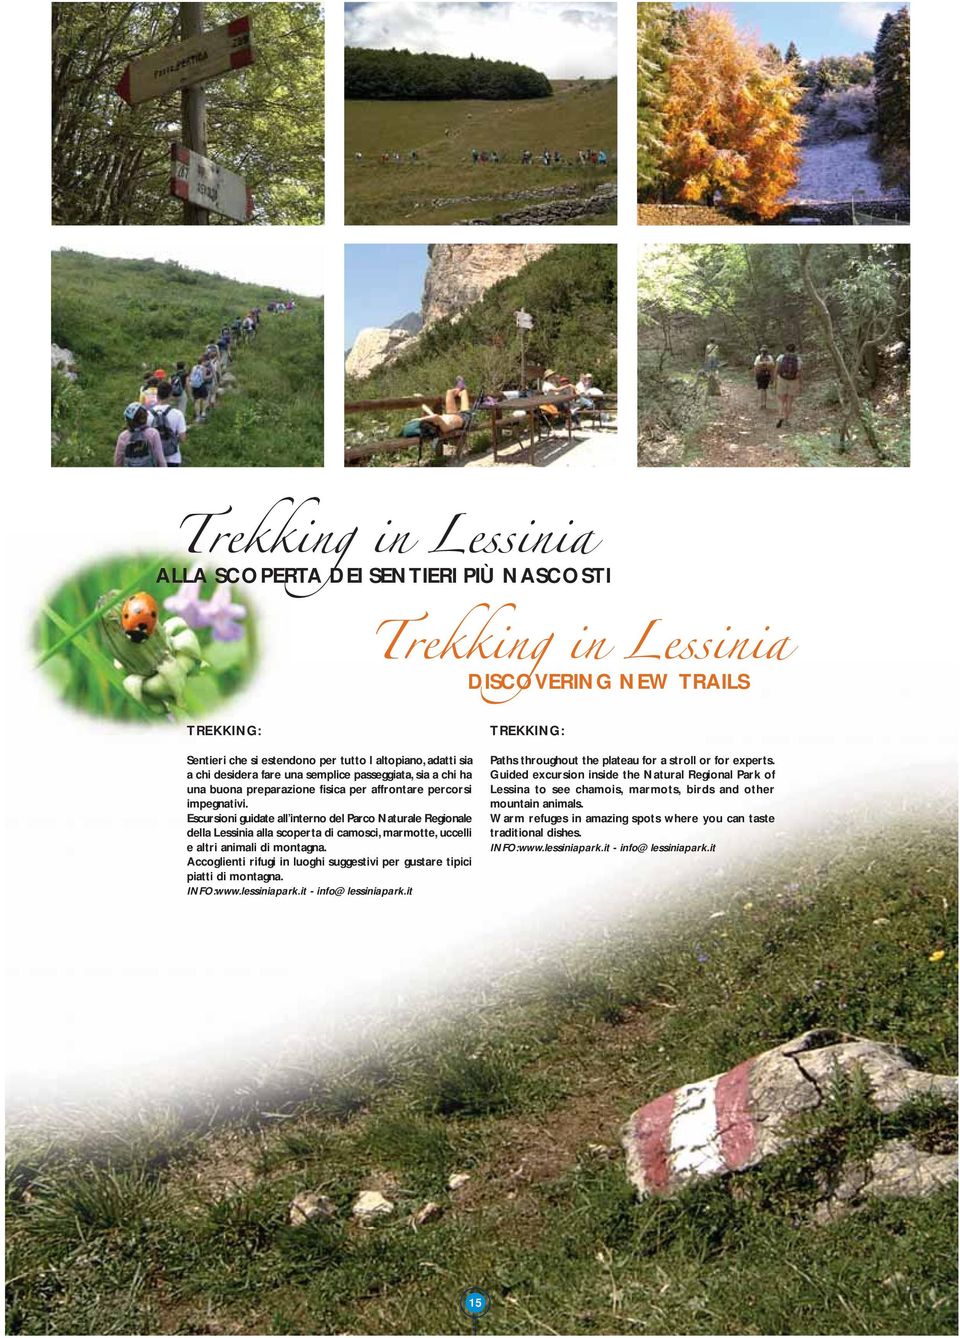 Escursioni guidate all interno del Parco Naturale Regionale della Lessinia alla scoperta di camosci, marmotte, uccelli e altri animali di montagna.